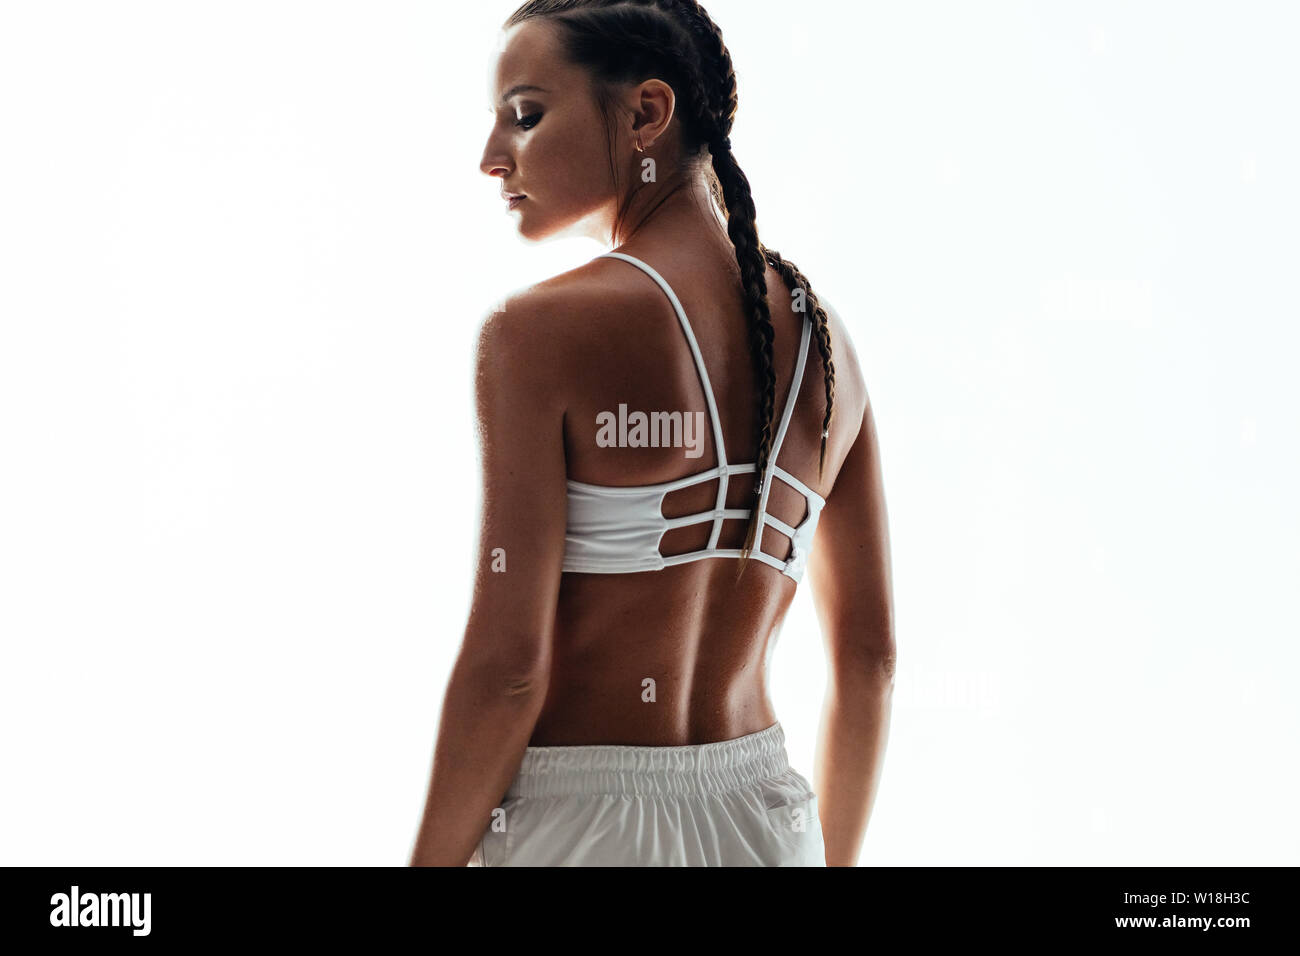 Ansicht der Rückseite des junge Frau im Sport Kleidung gegen weißen Hintergrund stehen. Weibliche fitness Model posiert im Studio. Stockfoto